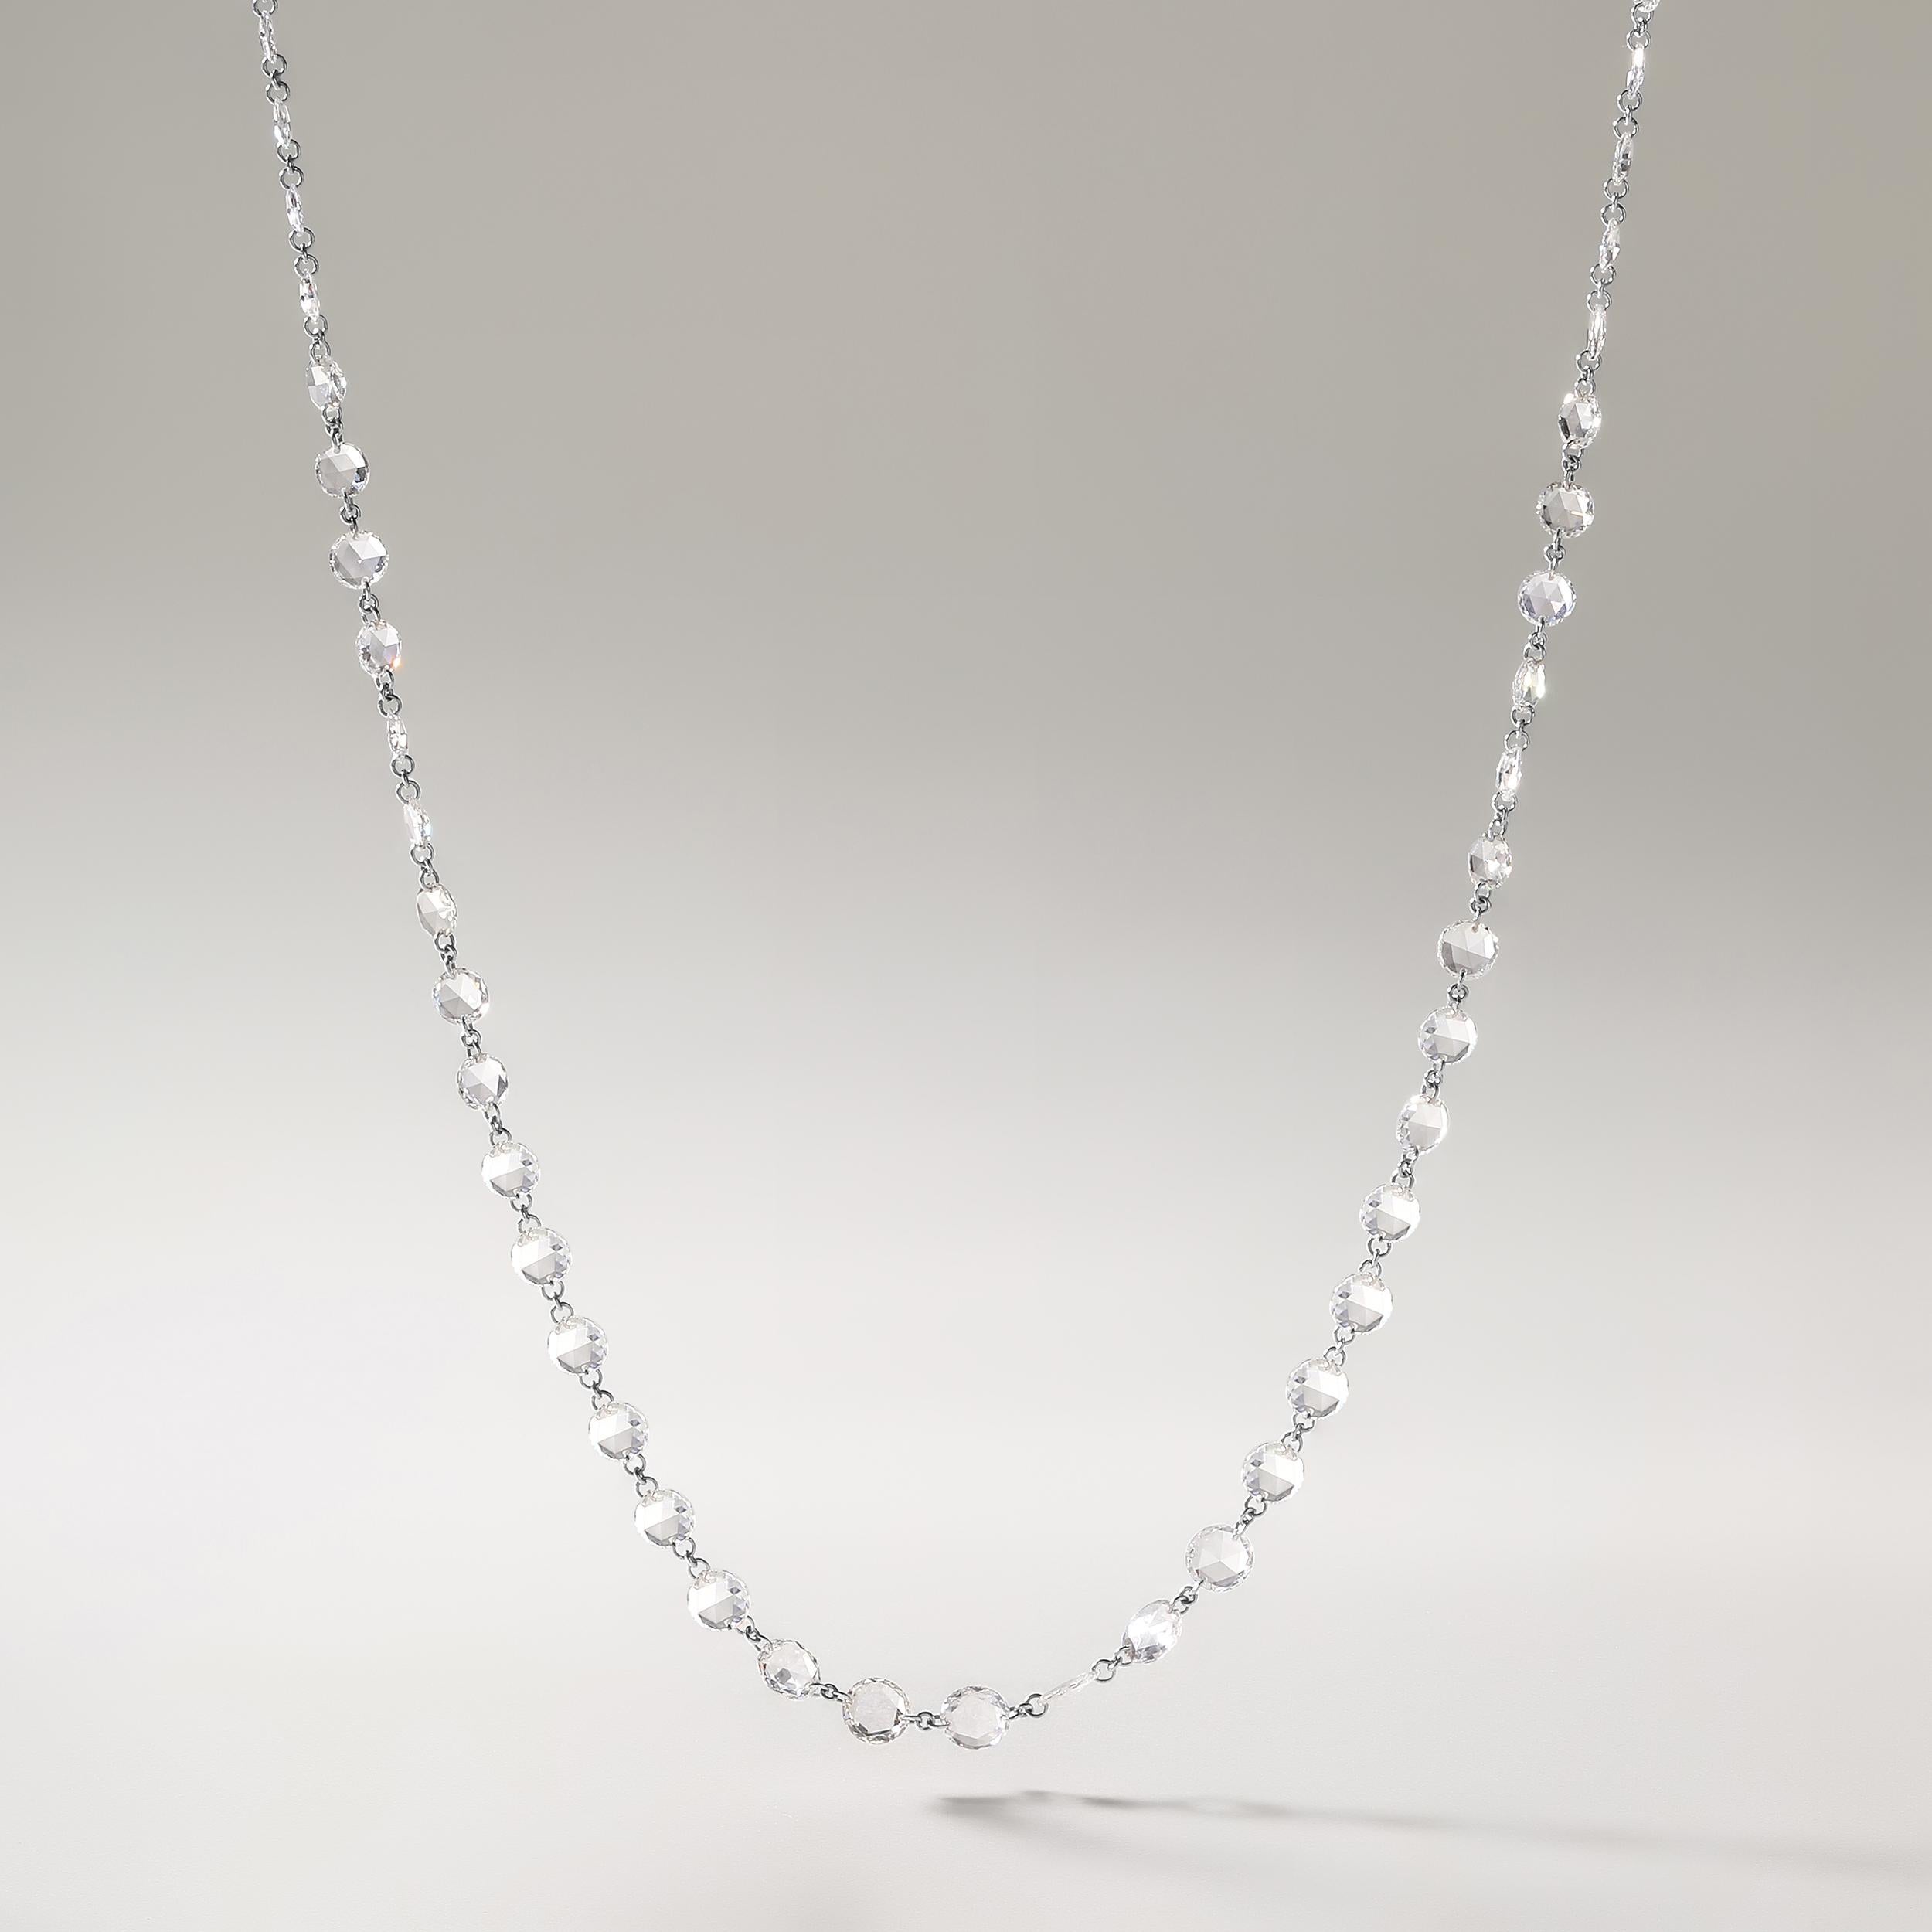 Fabriqué dans 3,39 grammes d'or blanc 18 carats, le collier contient 72 pierres de diamants naturels de forme ronde taillés en rose avec un total de 9,58 carats de couleur E-F et de pureté VVS-VS. La longueur du collier est de 18 cm.

UNE ESSENCE